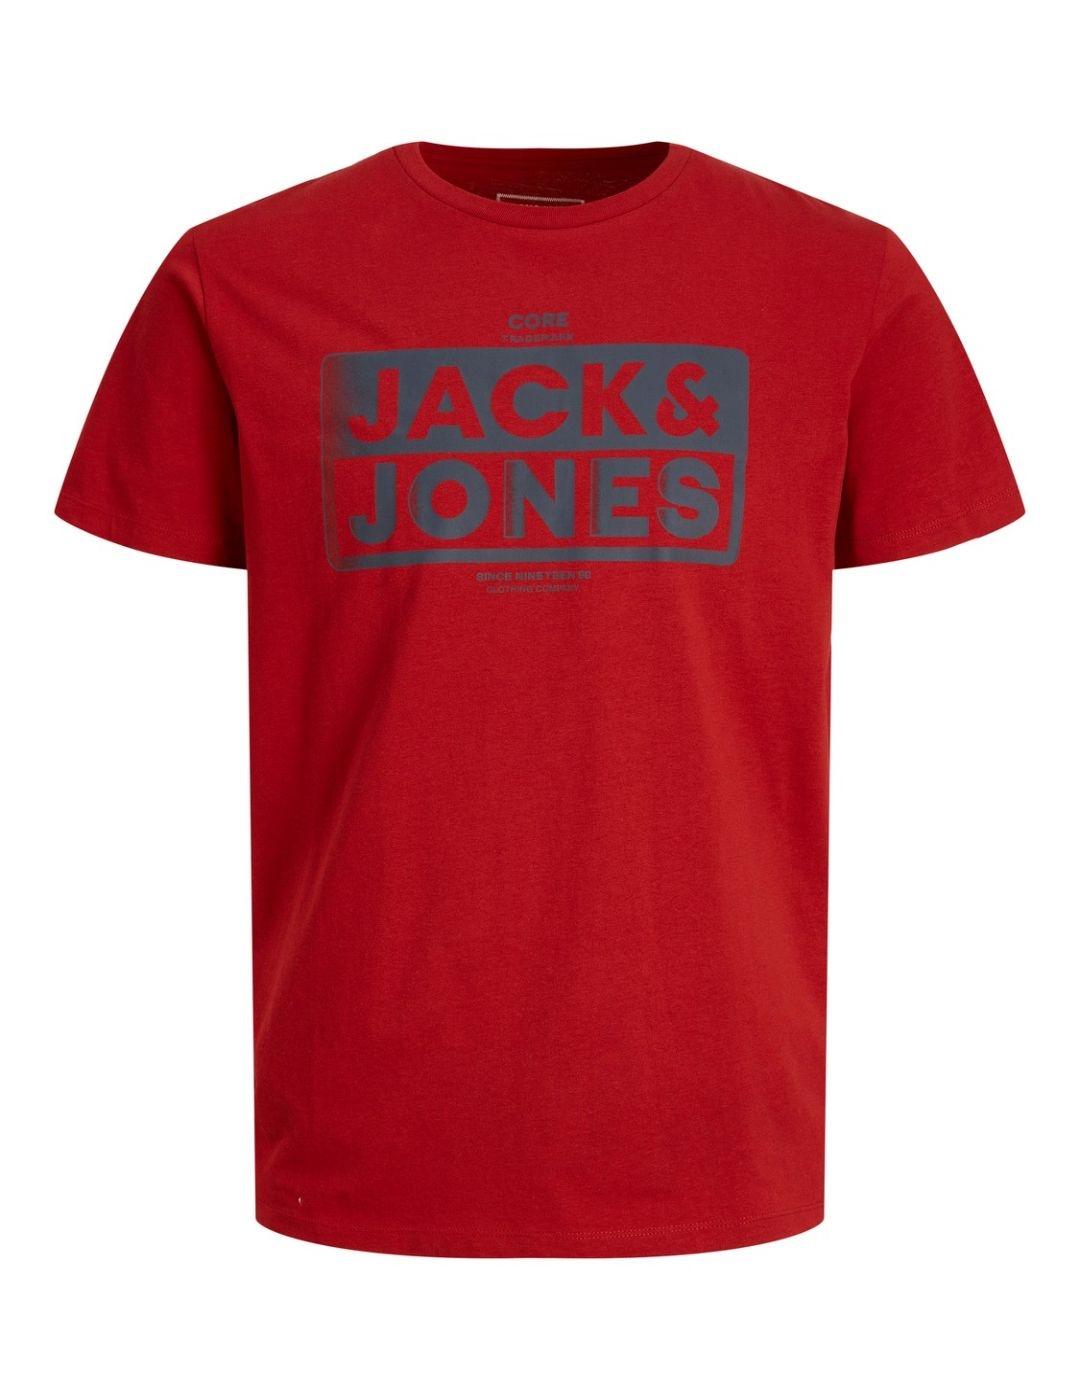 Camiseta Jack&Jones Kim roja para hombre -b